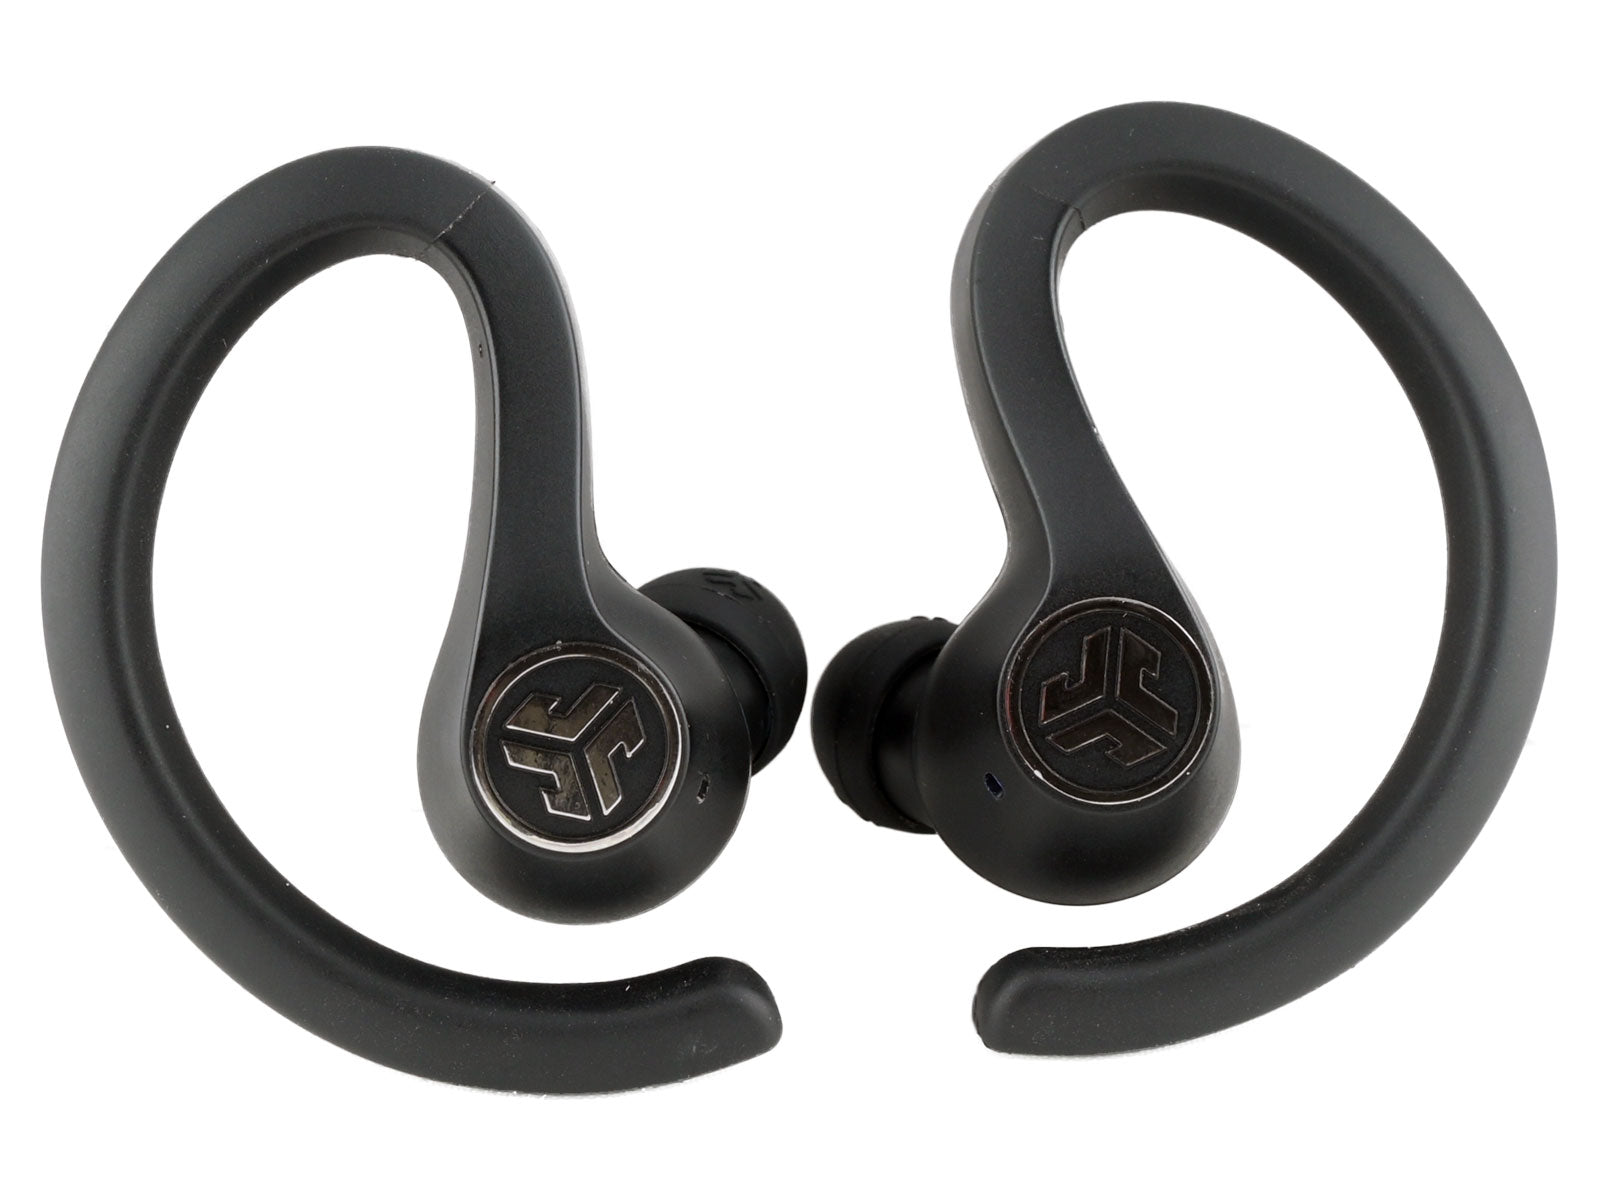 JLab JBuds Air Sport True Wireless Earbuds In-Ear Kopfhörer Schwarze kabellose Ohrhörer liegen nebeneinander vor einem weißen Hintergrund und verfügen über gebogene Ohrbügel und ein rundes Emblem mit dem Logo „JLab“ auf jedem Ohrhörer.